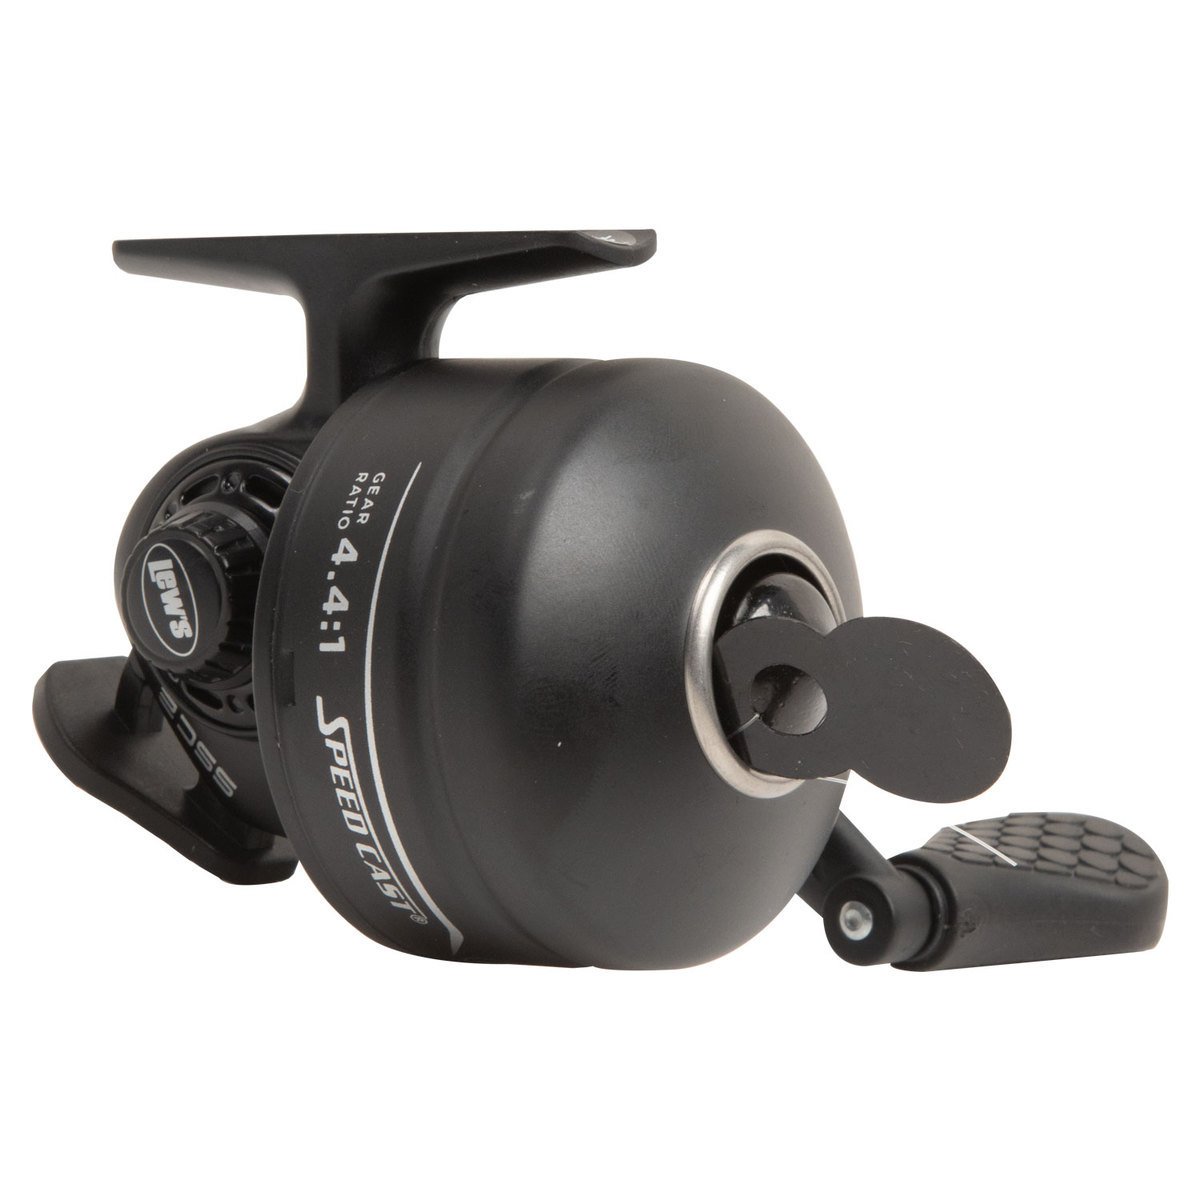 Zebco Omega Pro Spincast Fishing Reel, Size 20 Reel, Black